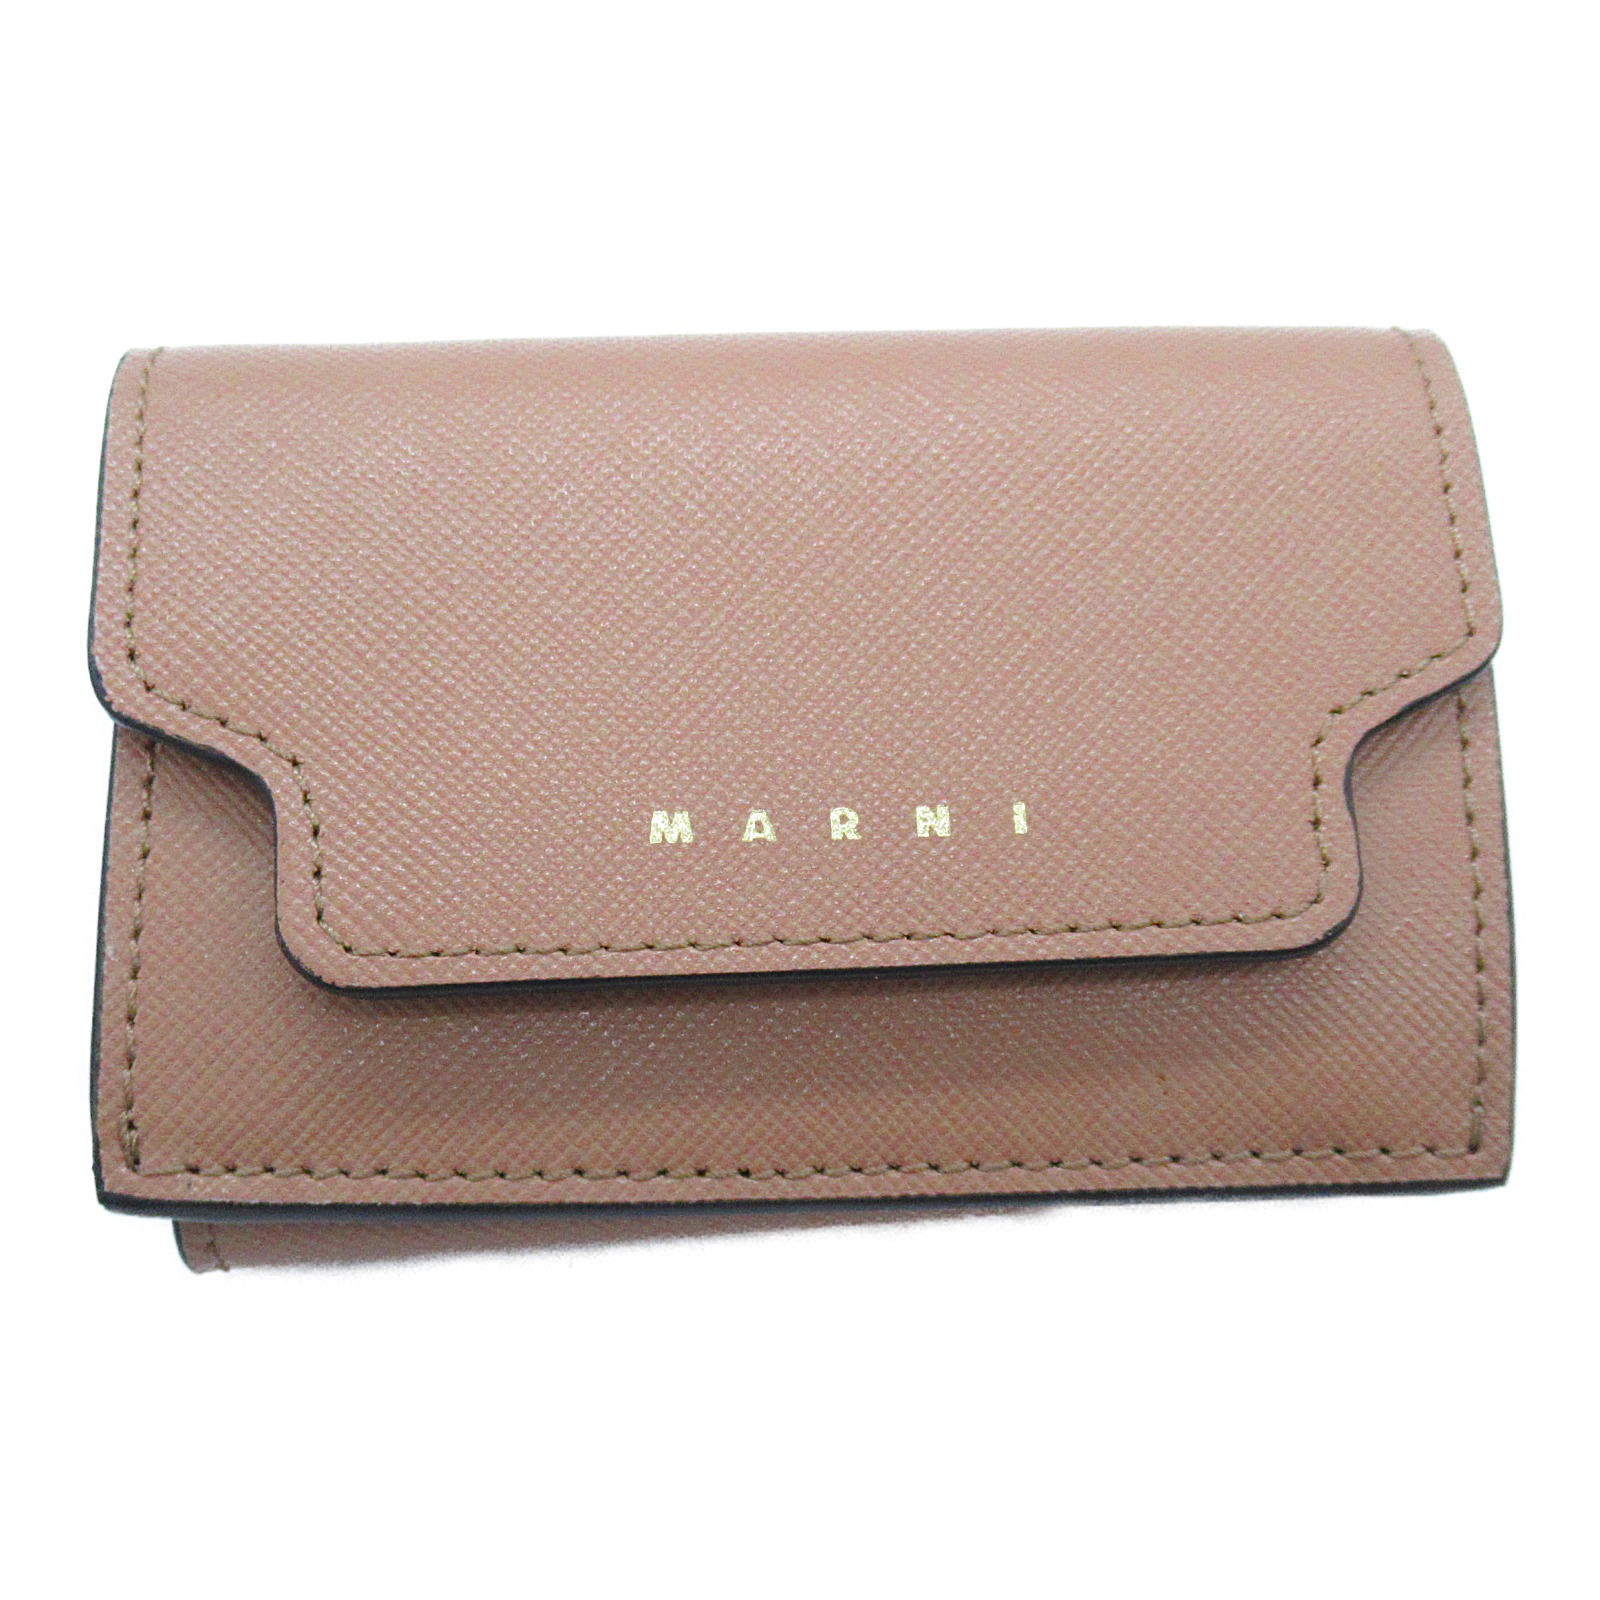 翌日発送可能】 マルニ MARNI 三つ折り財布 財布 レザー レディース